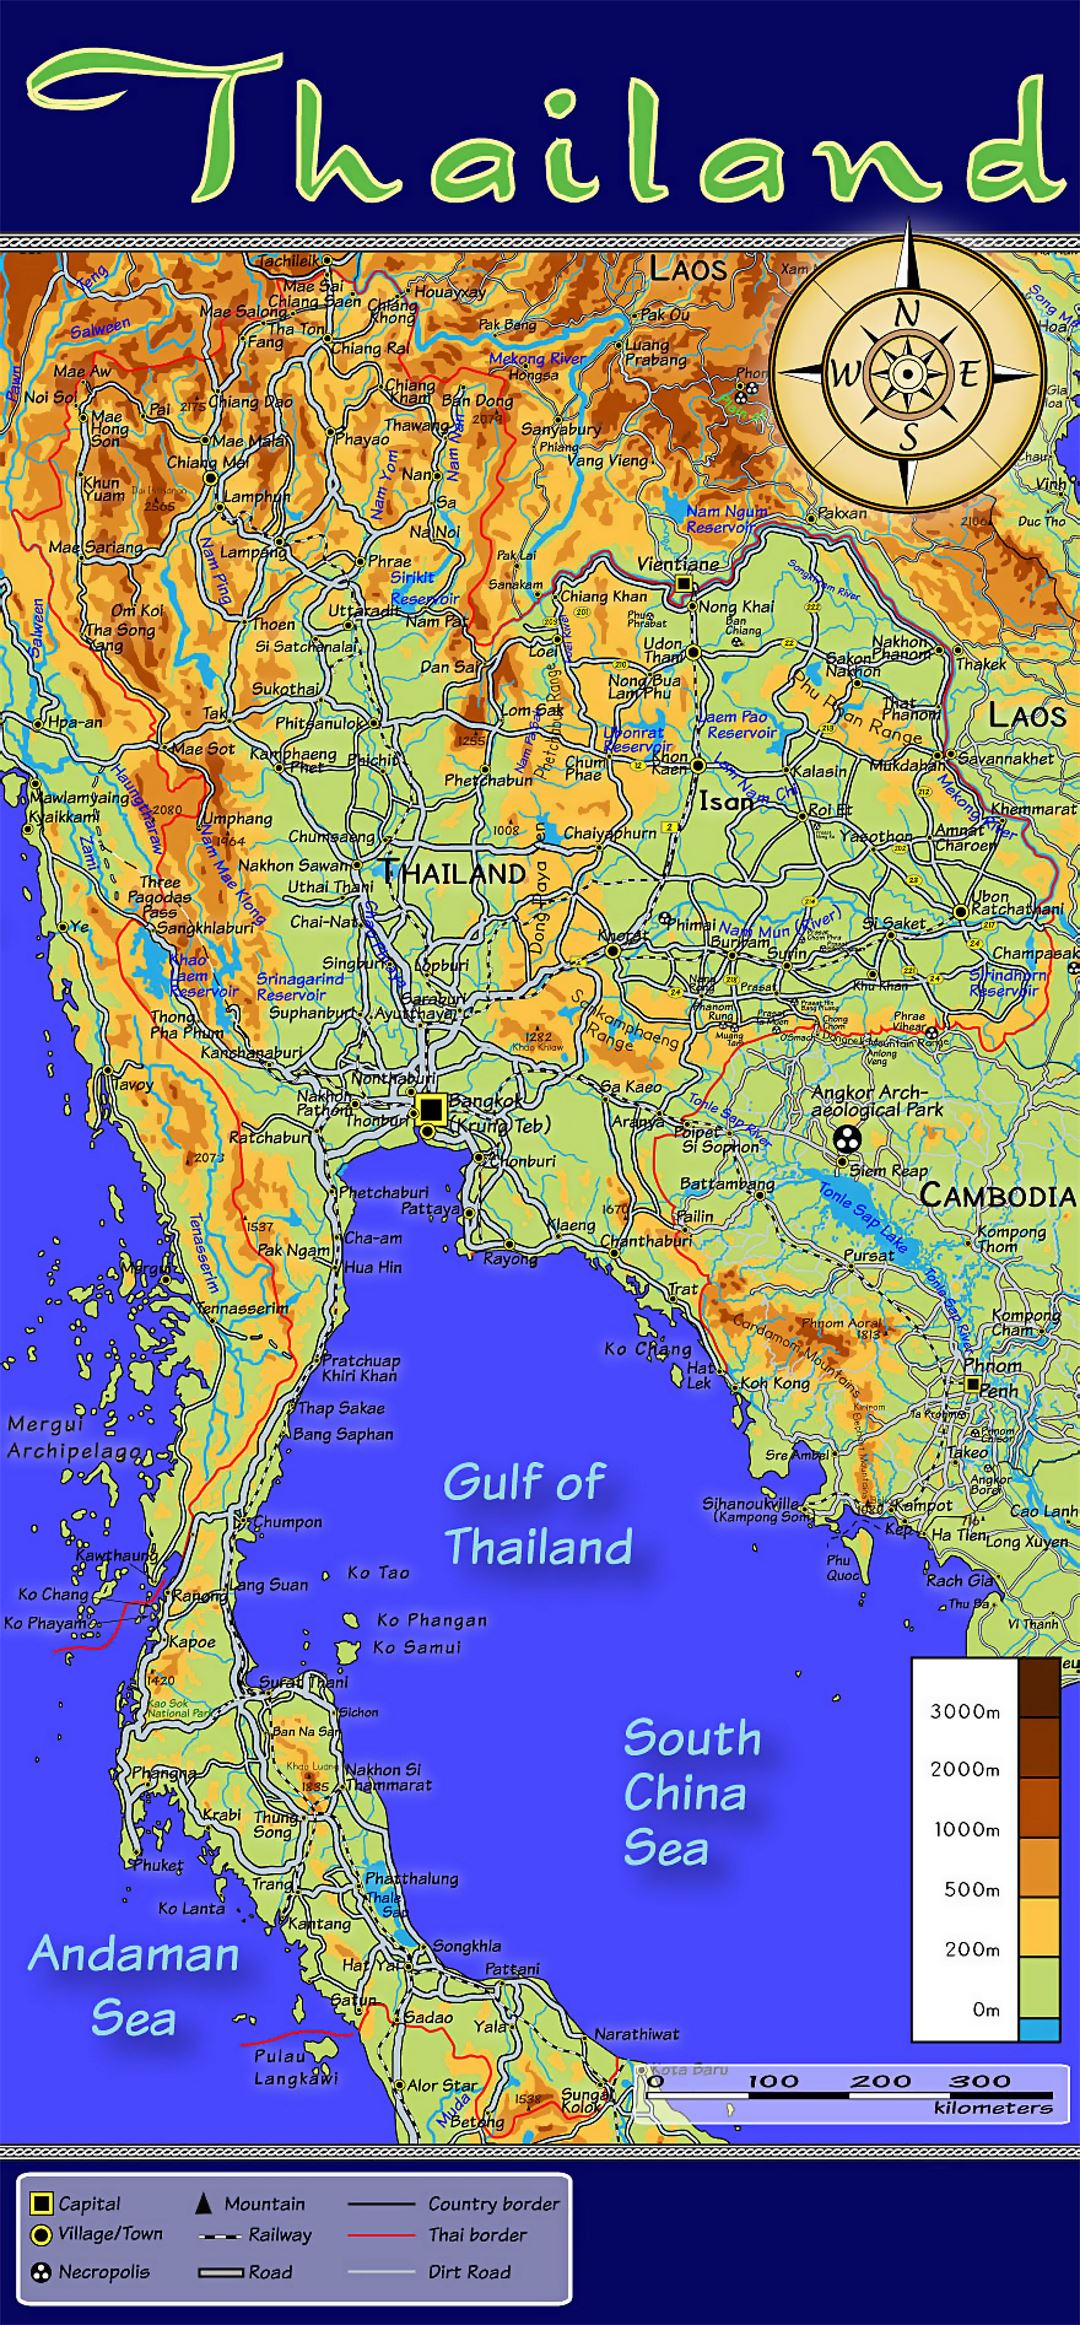 Detallado mapa topográfico de Tailandia con otras marcas